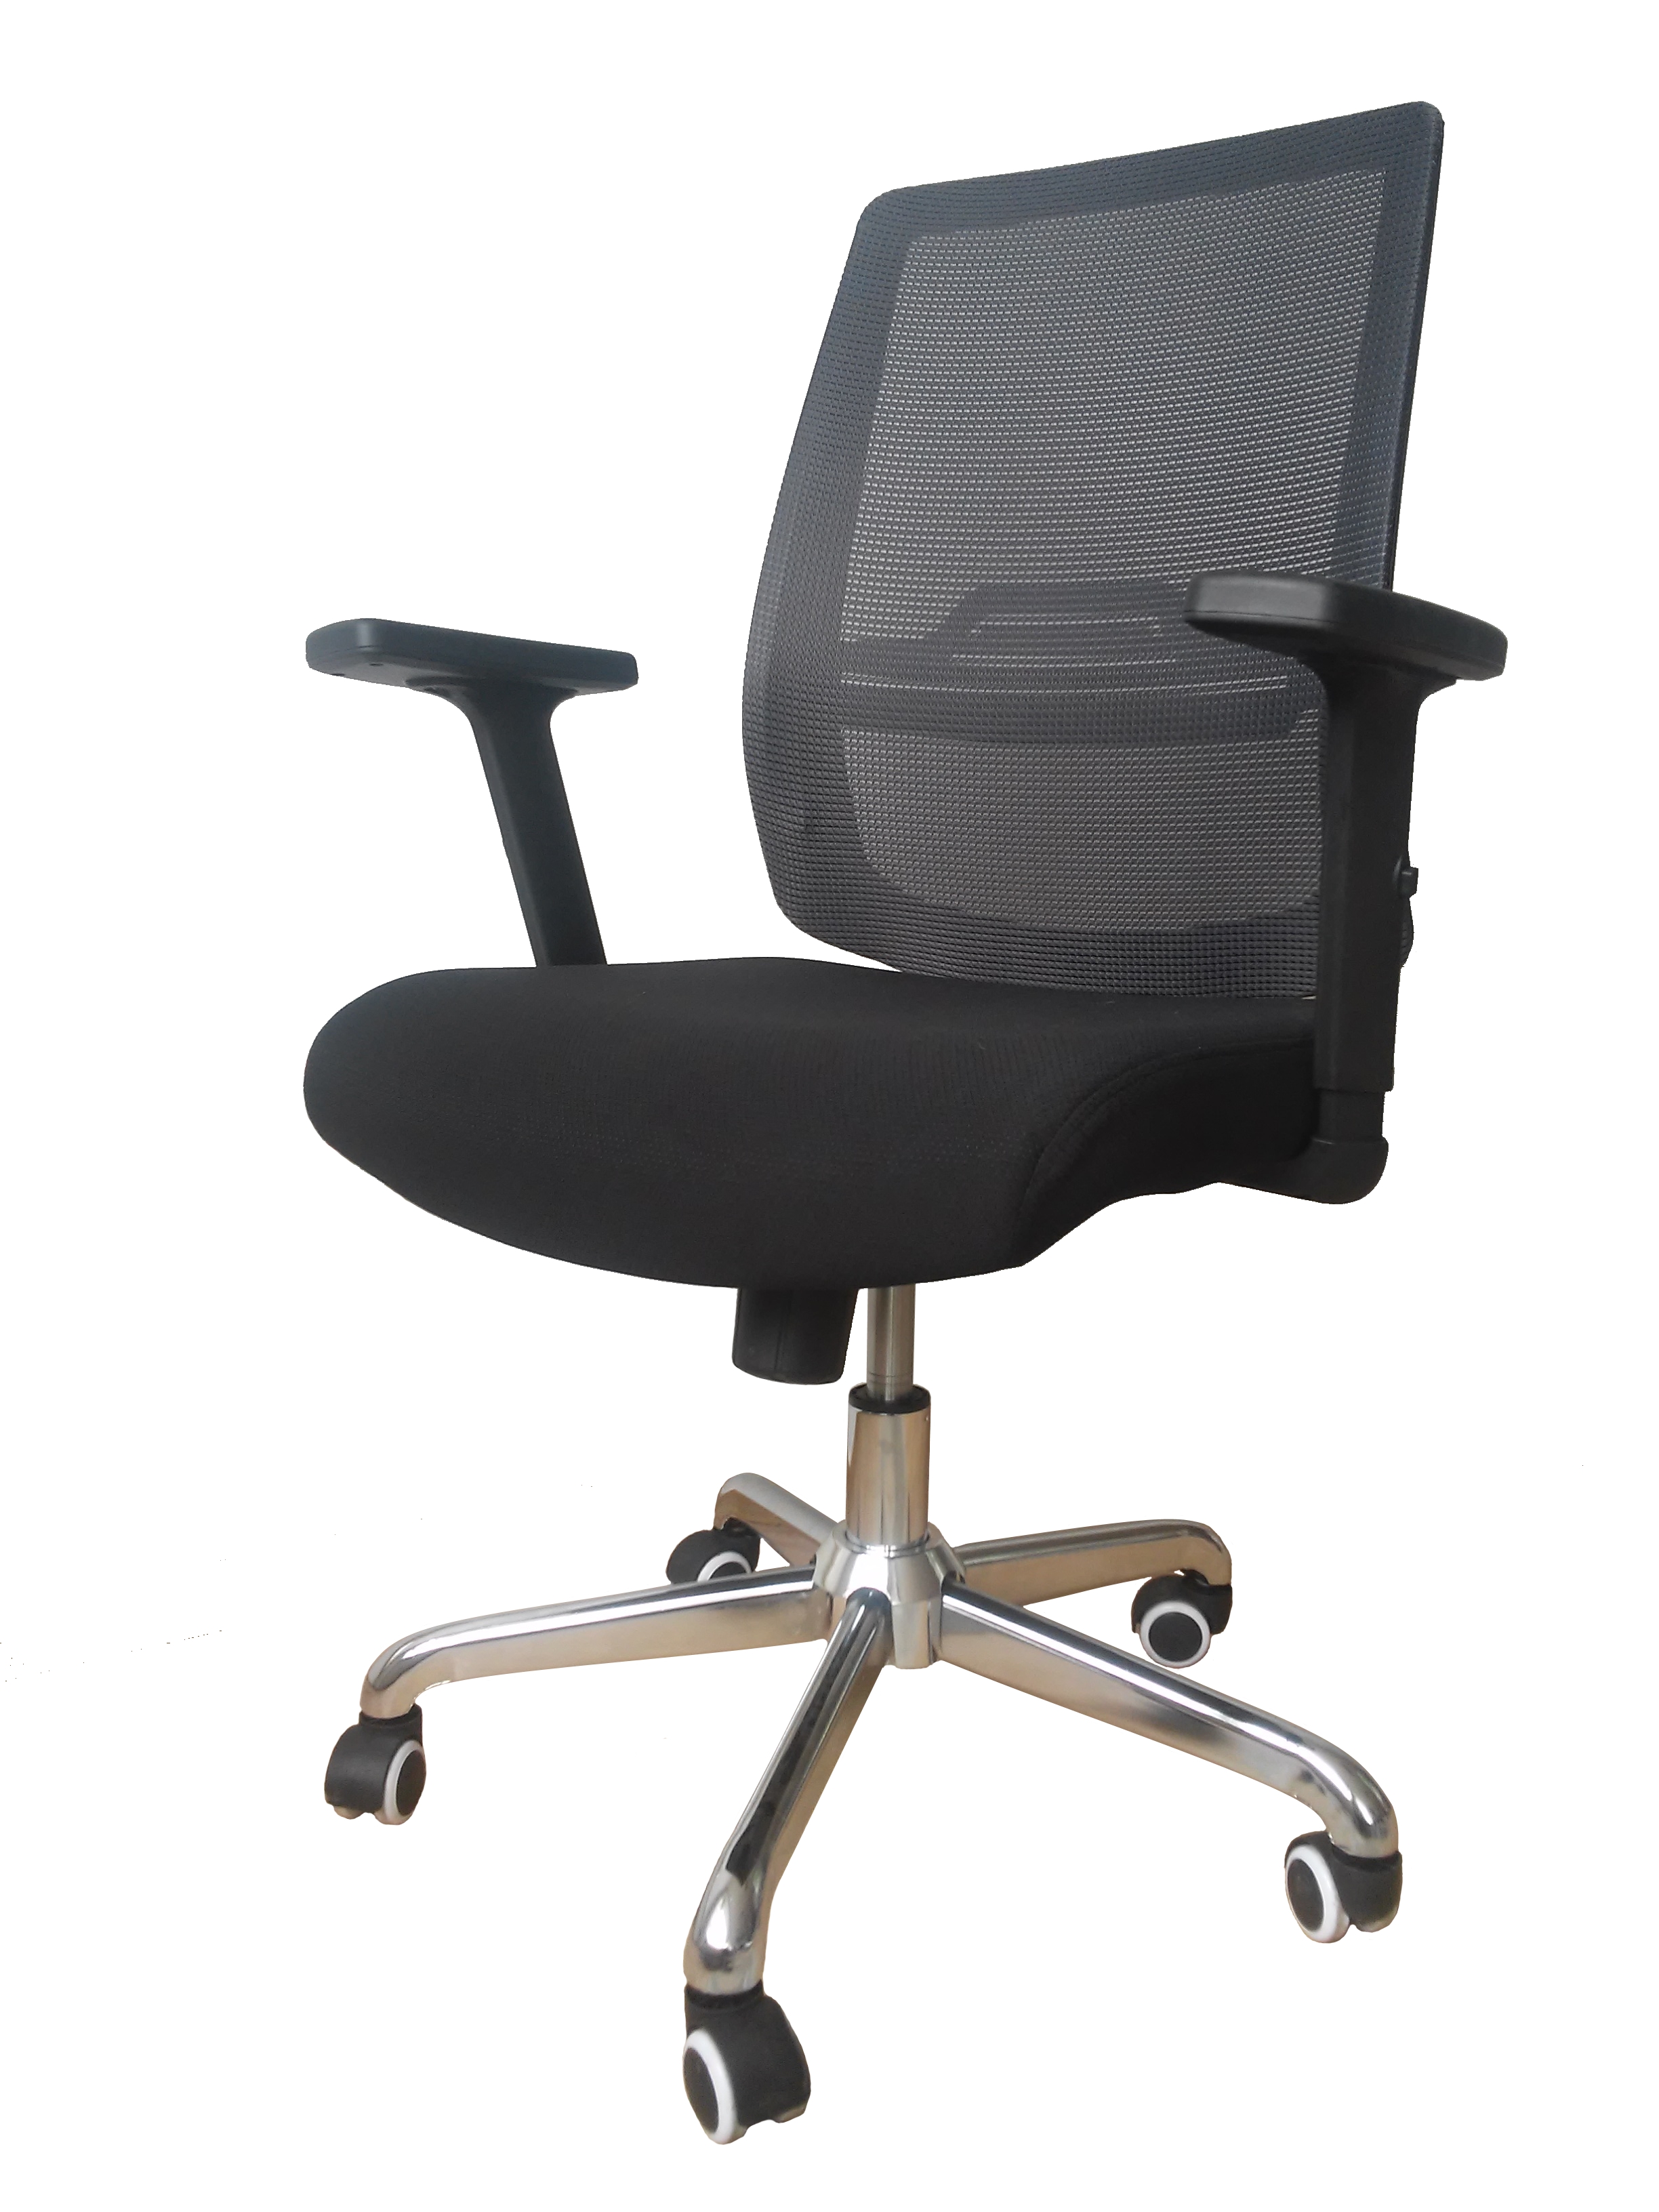 Офисное кресло руководителя erick xxl 150 кг